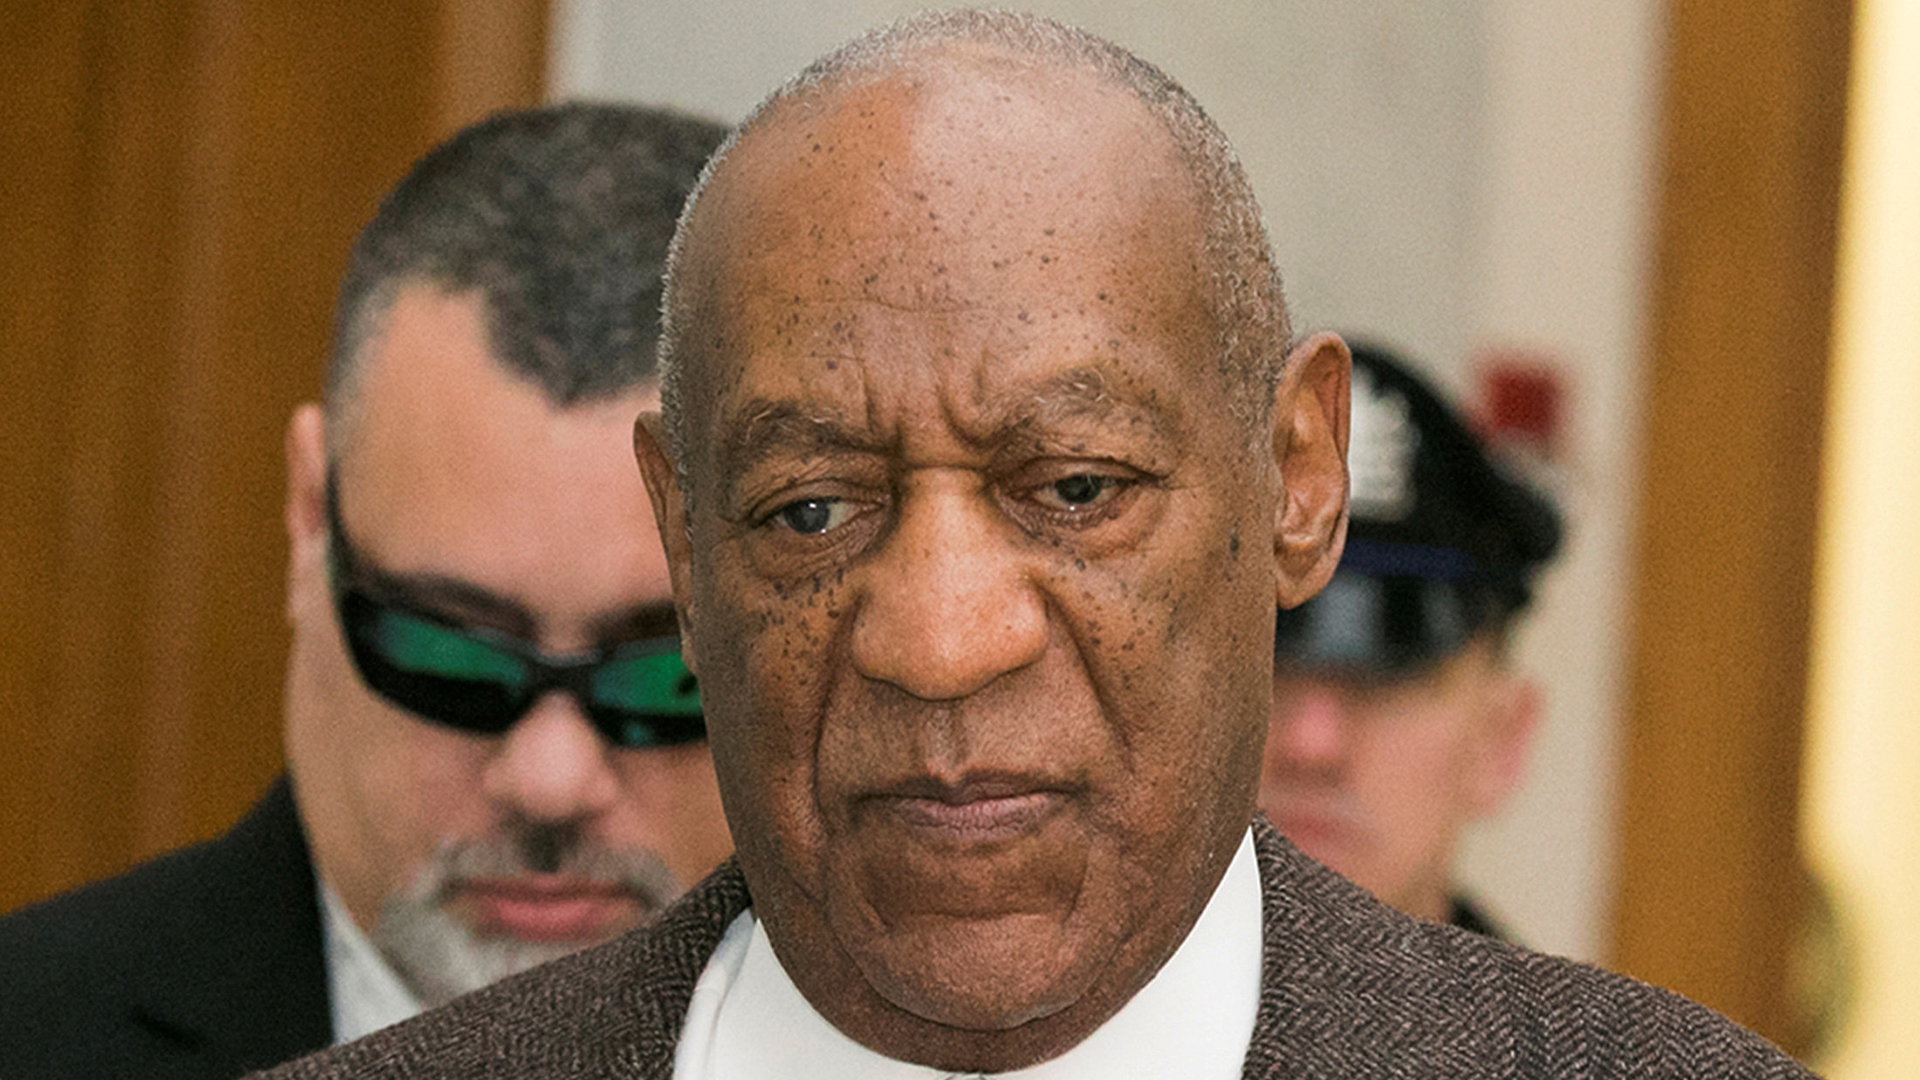 Empieza el primer juicio contra Bill Cosby por abusos sexuales